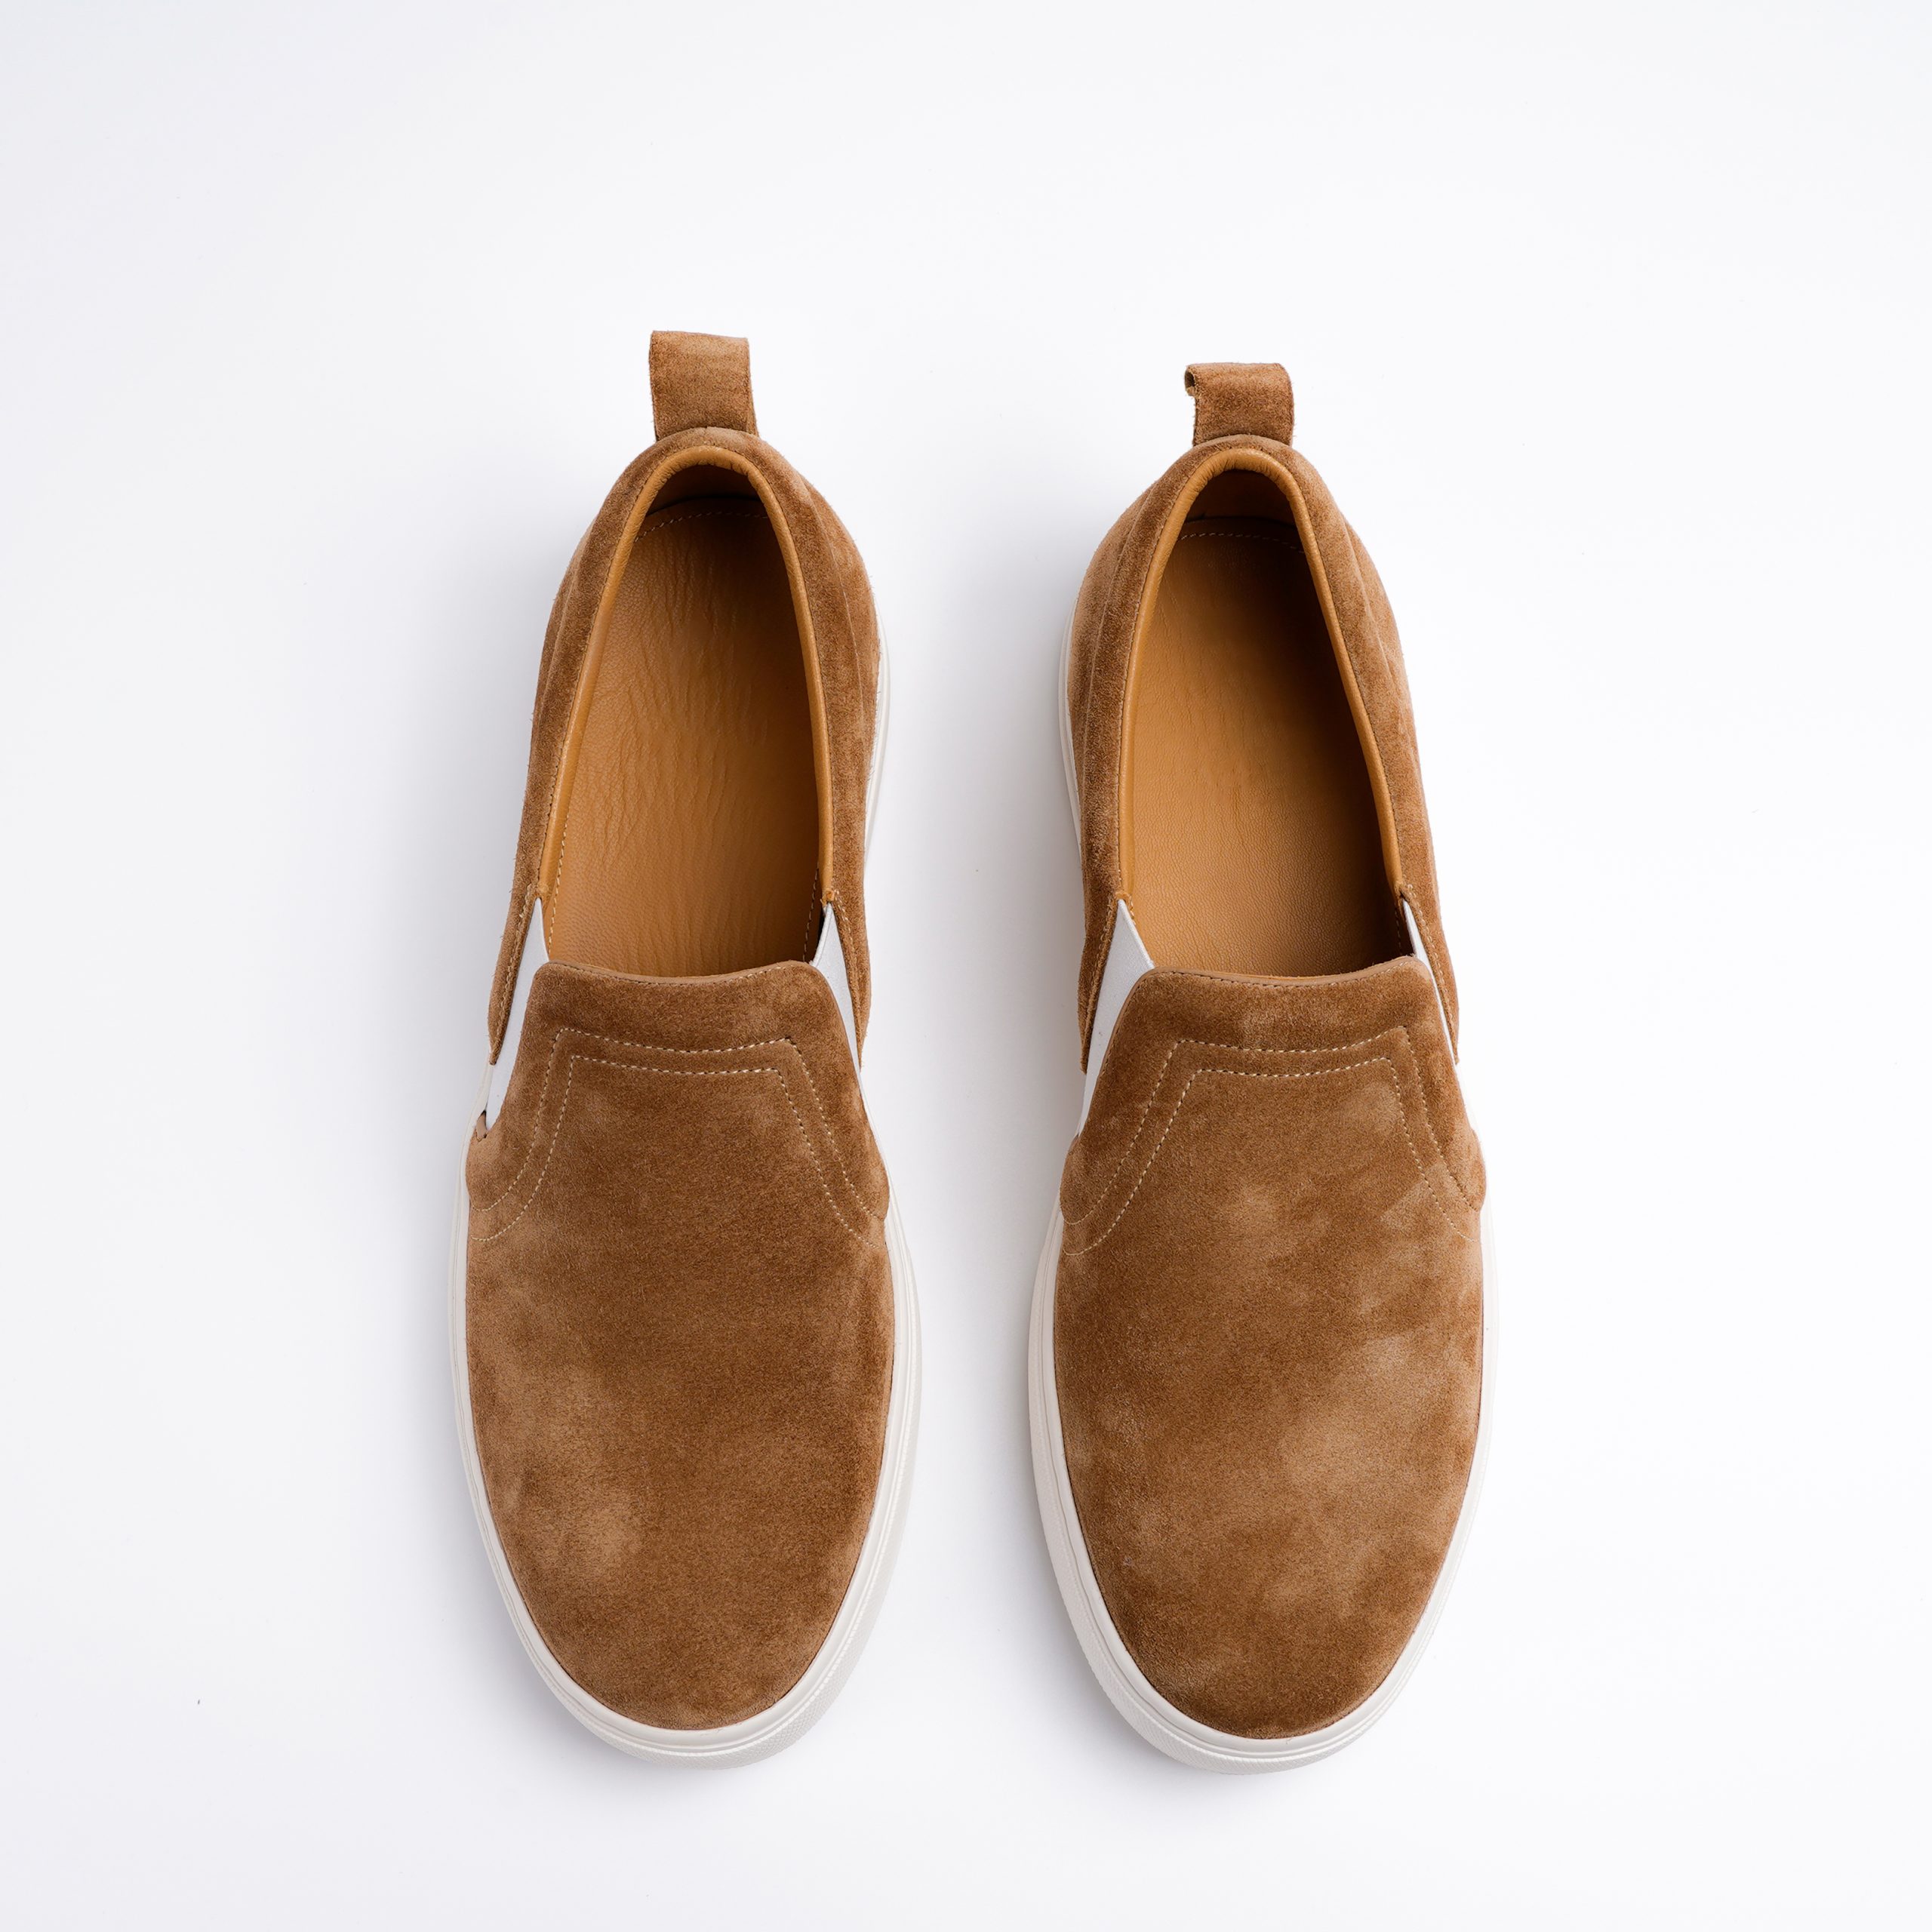 Giày slip-ons đa năng - sự thoải mái và phong cách trong mọi hoàn cảnh (Nguồn: Internet)